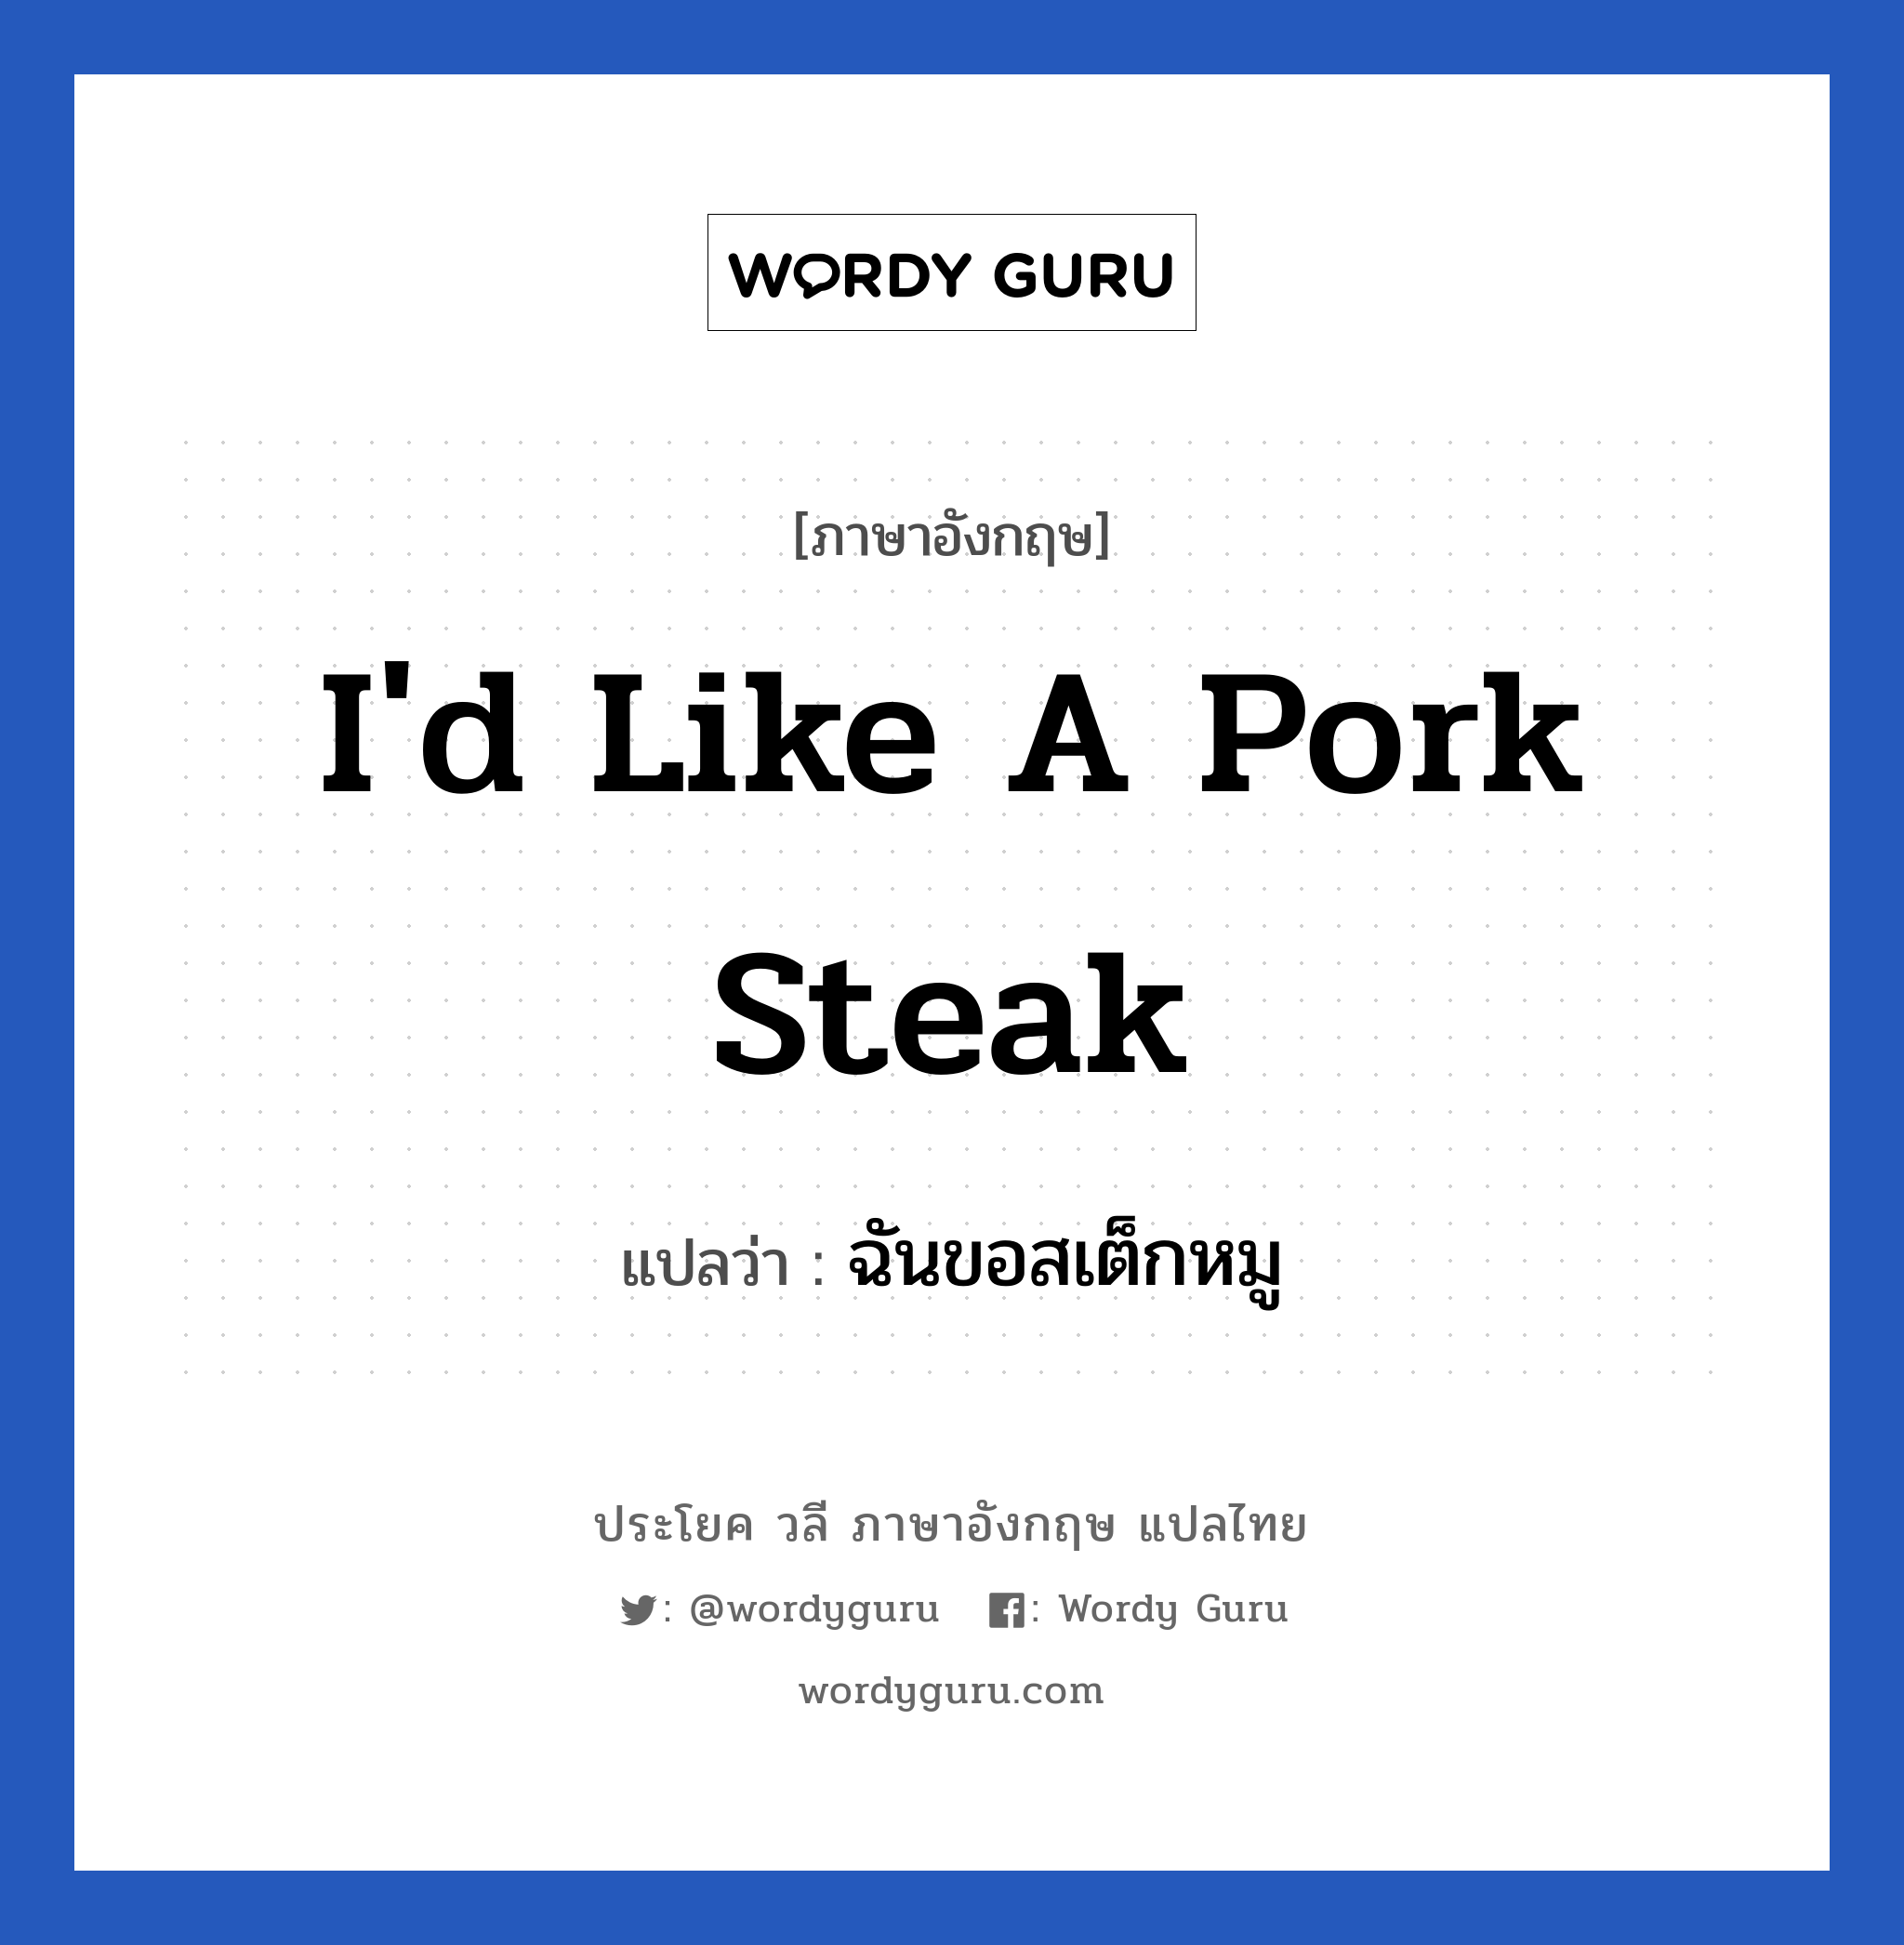 I'd like a pork steak แปลว่า?, วลีภาษาอังกฤษ I'd like a pork steak แปลว่า ฉันขอสเต็กหมู